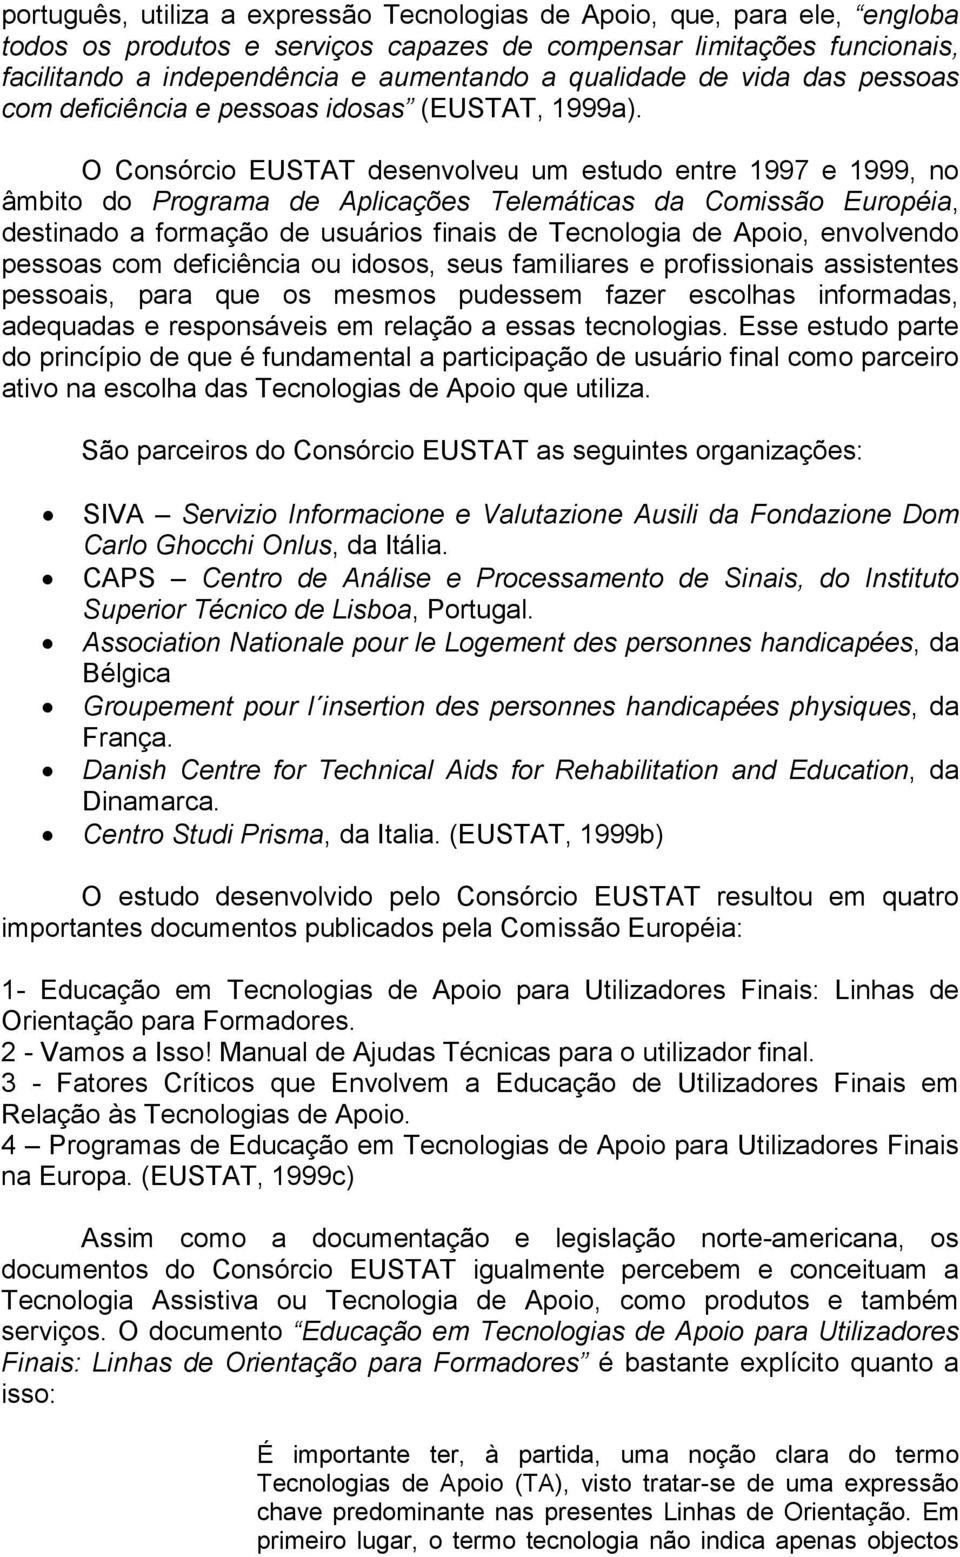 O Consórcio EUSTAT desenvolveu um estudo entre 1997 e 1999, no âmbito do Programa de Aplicações Telemáticas da Comissão Européia, destinado a formação de usuários finais de Tecnologia de Apoio,